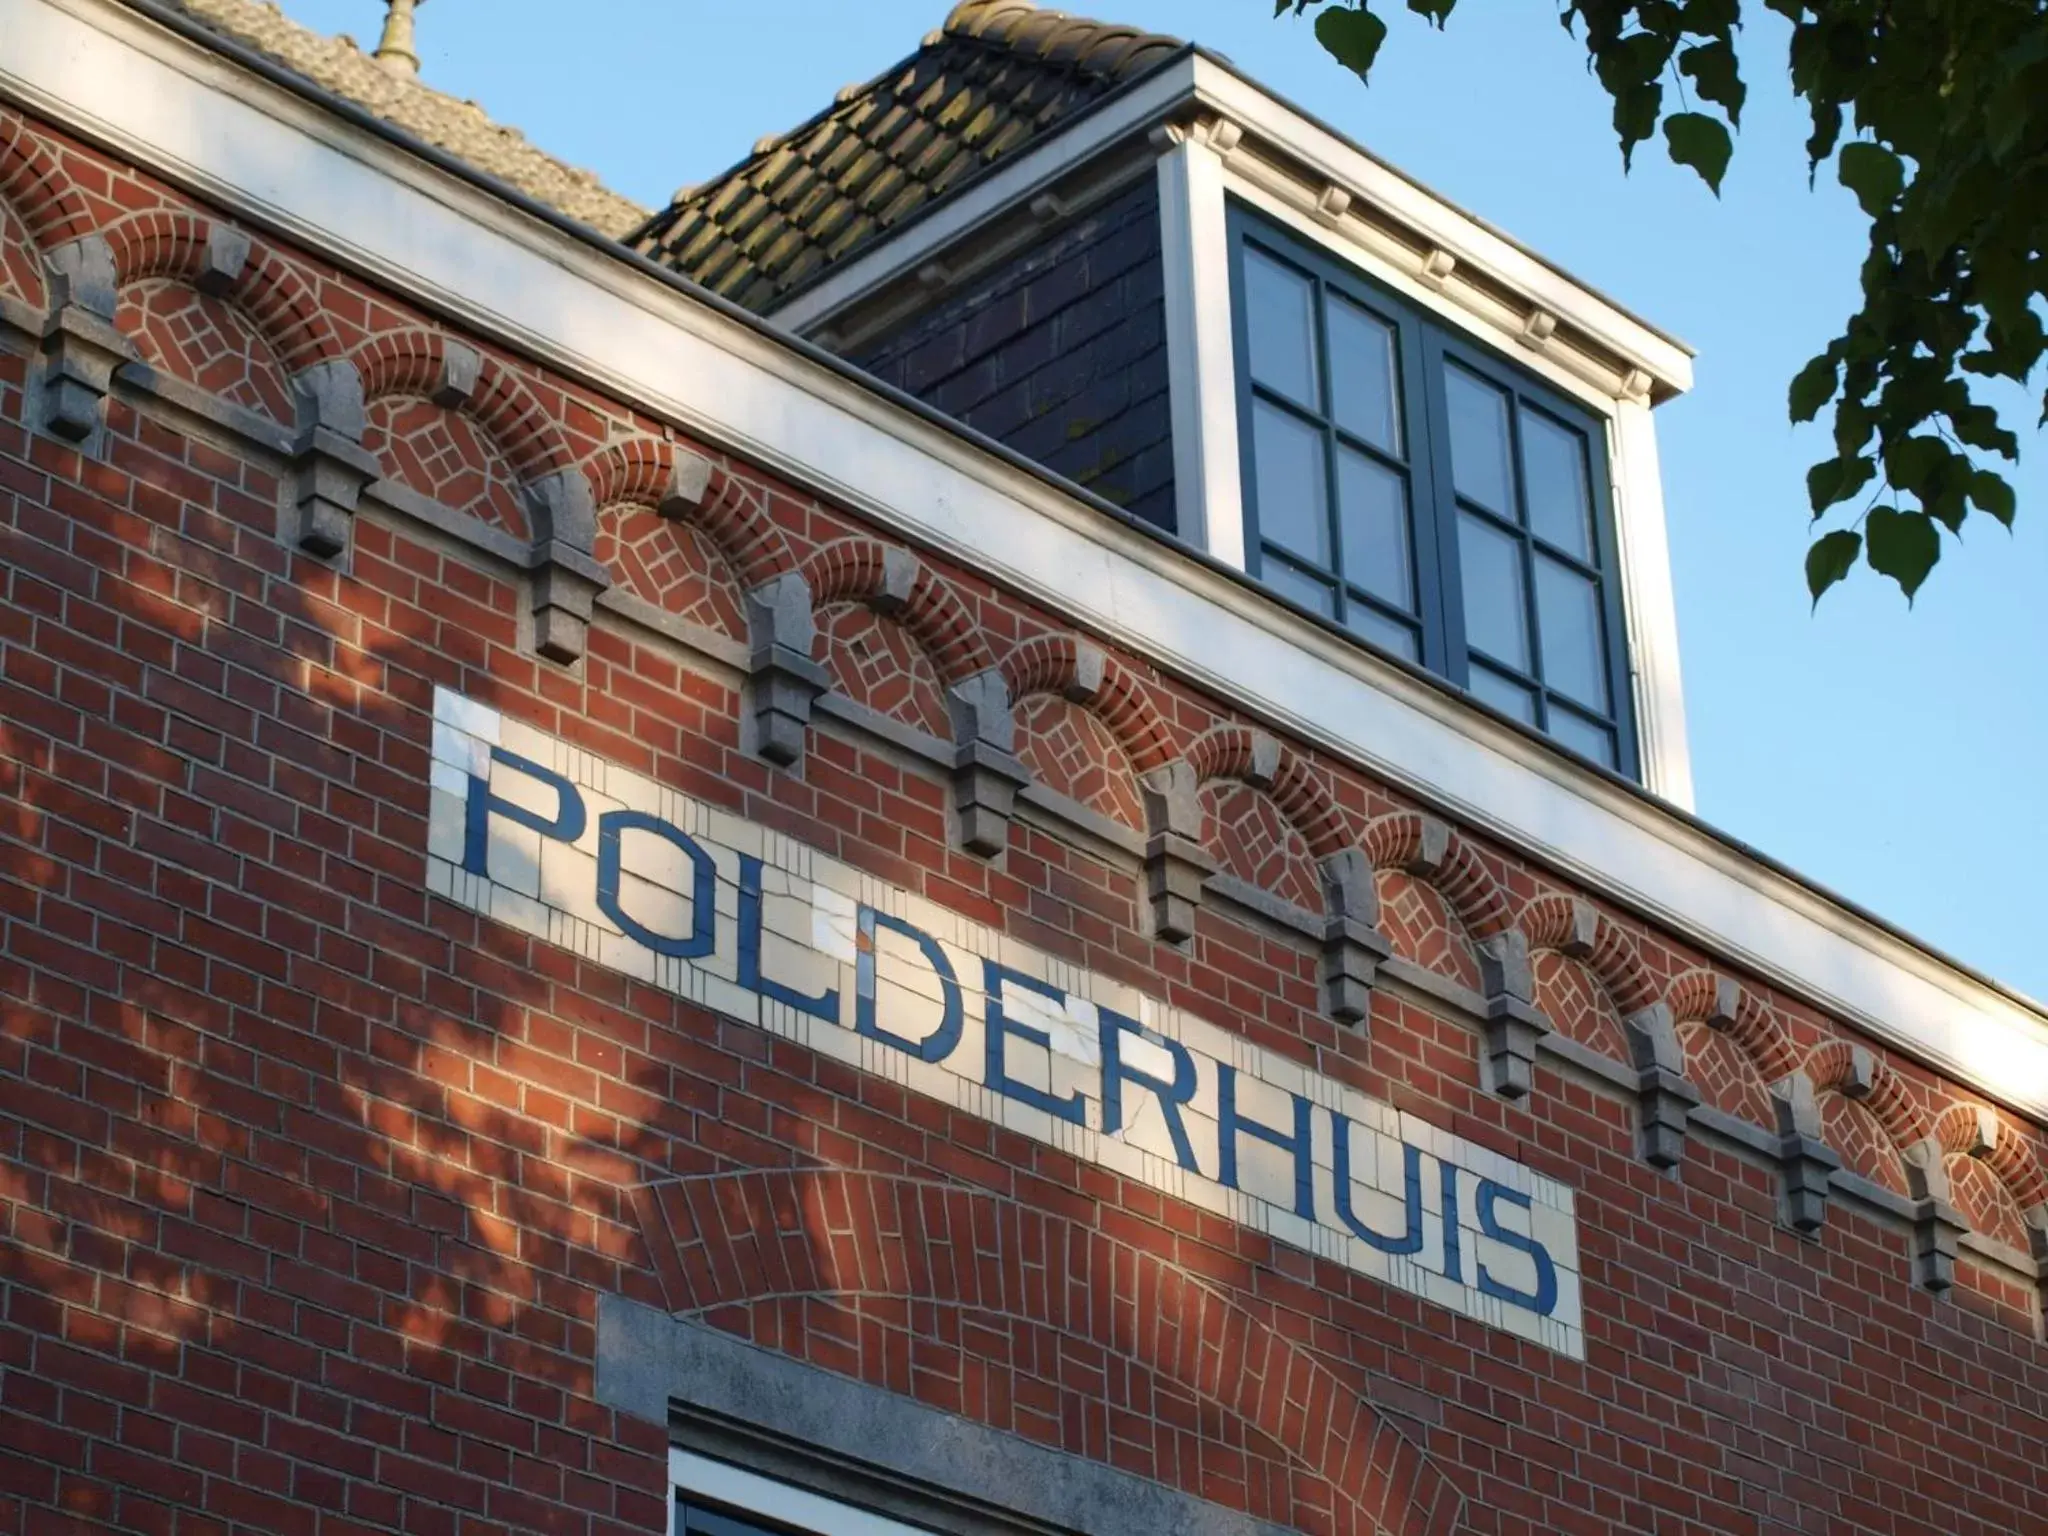 Property Building in Polderhuis Bed & Breakfast